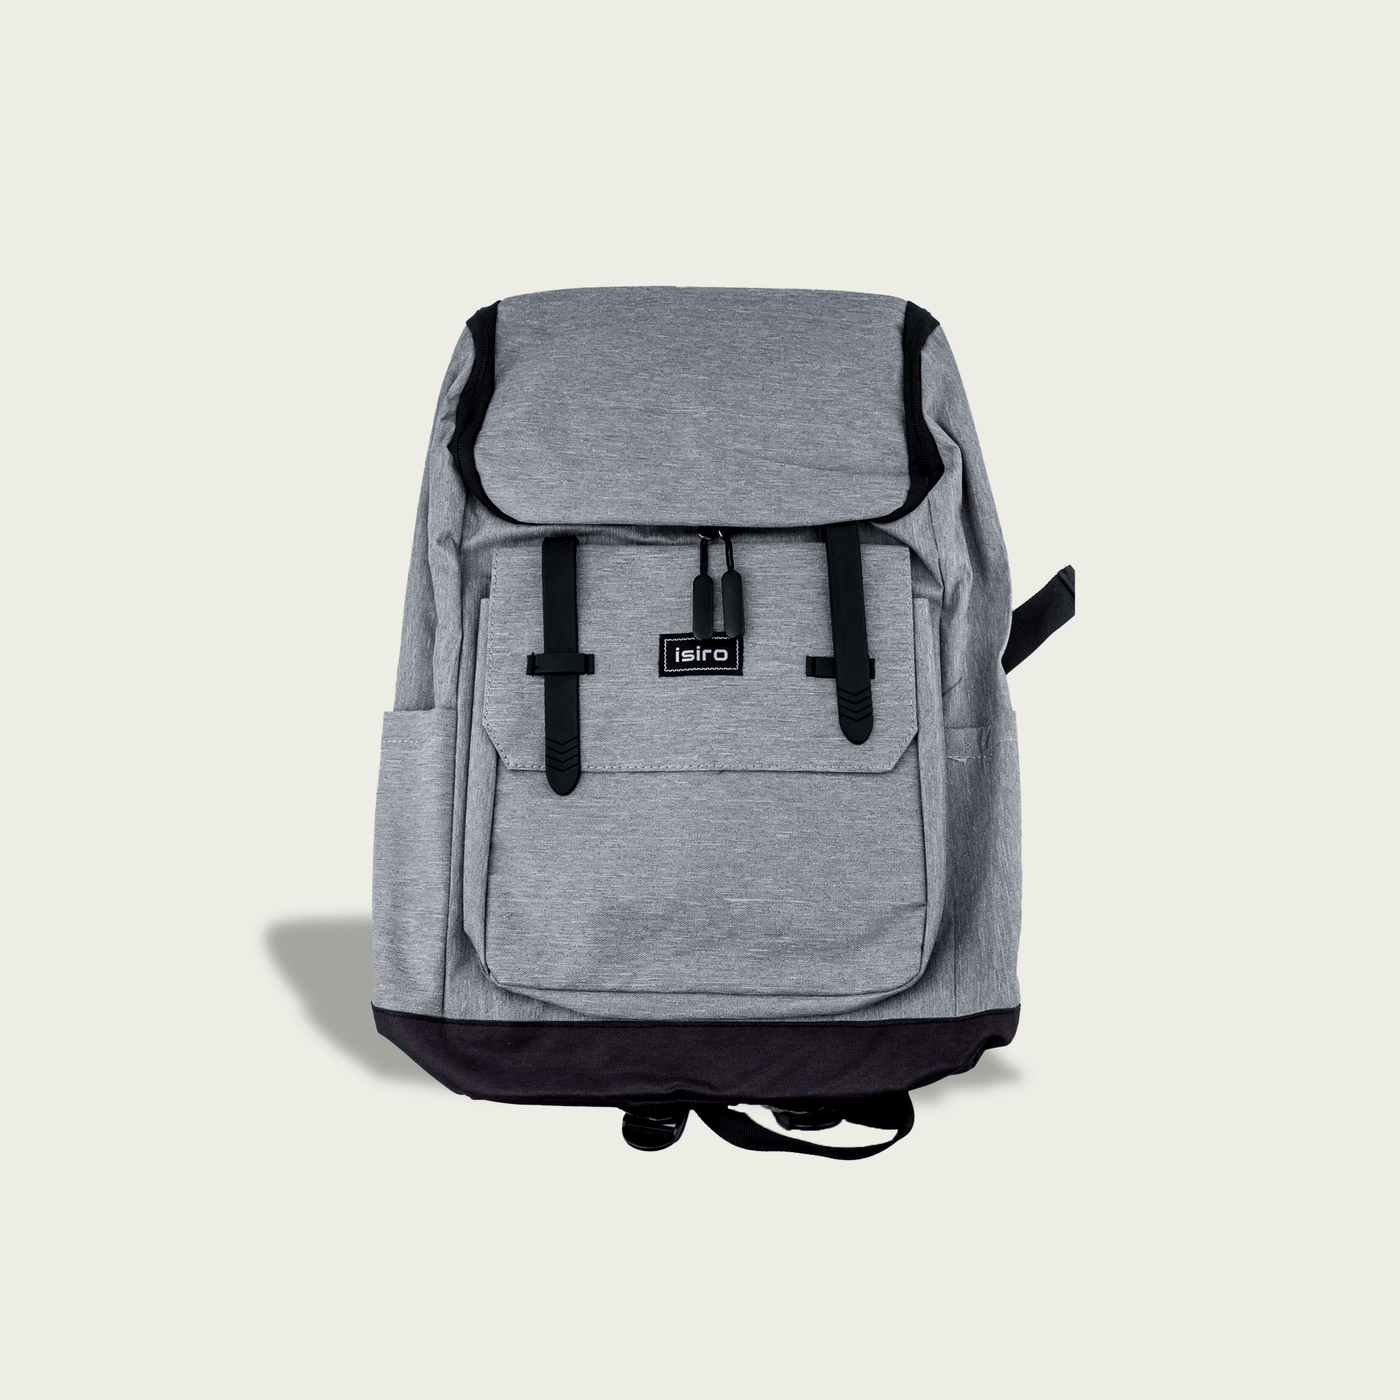 Travel Laptop Backpack Bag